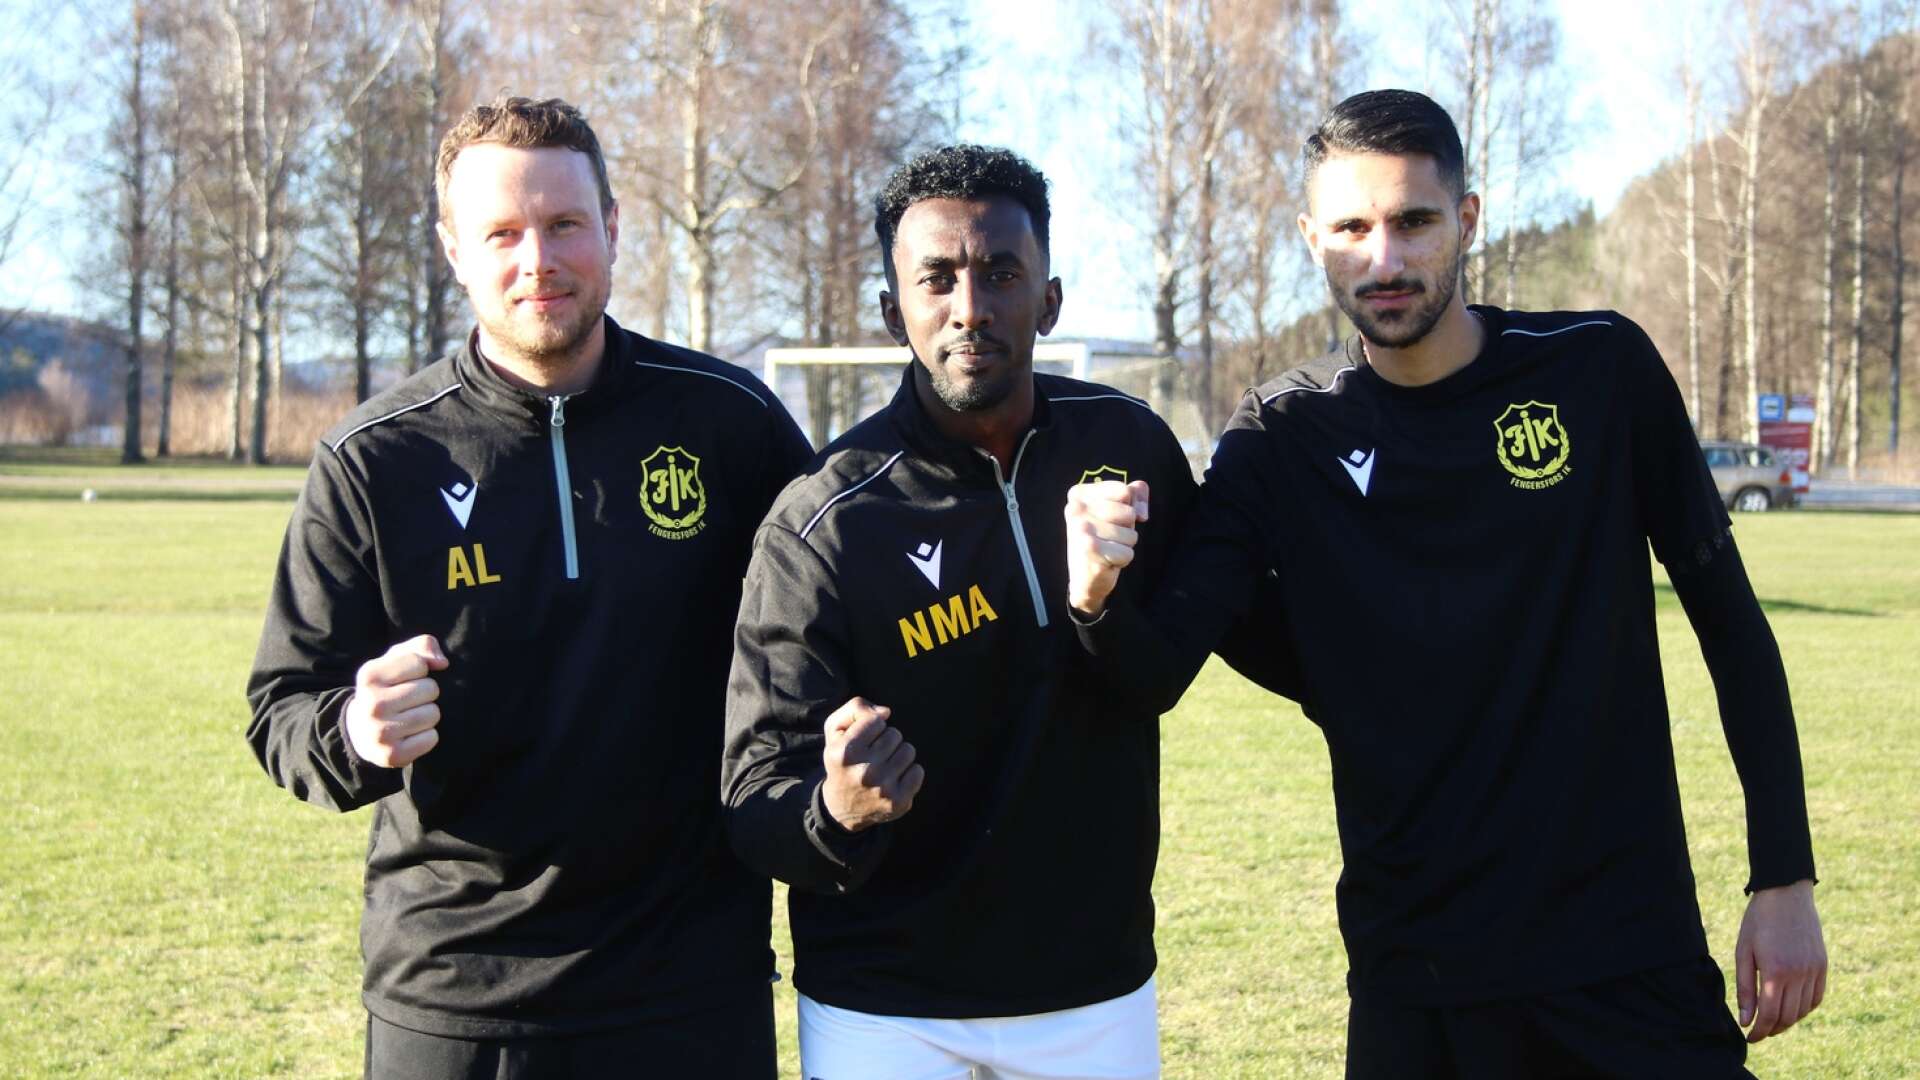 Atle Lindh, Nebil Mohammed Ali och Ali Jassim är i första hand de som ska leverera offensivt för Fengersfors IK. De är redo att ta sig an Tösse IF i premiären på lördag.